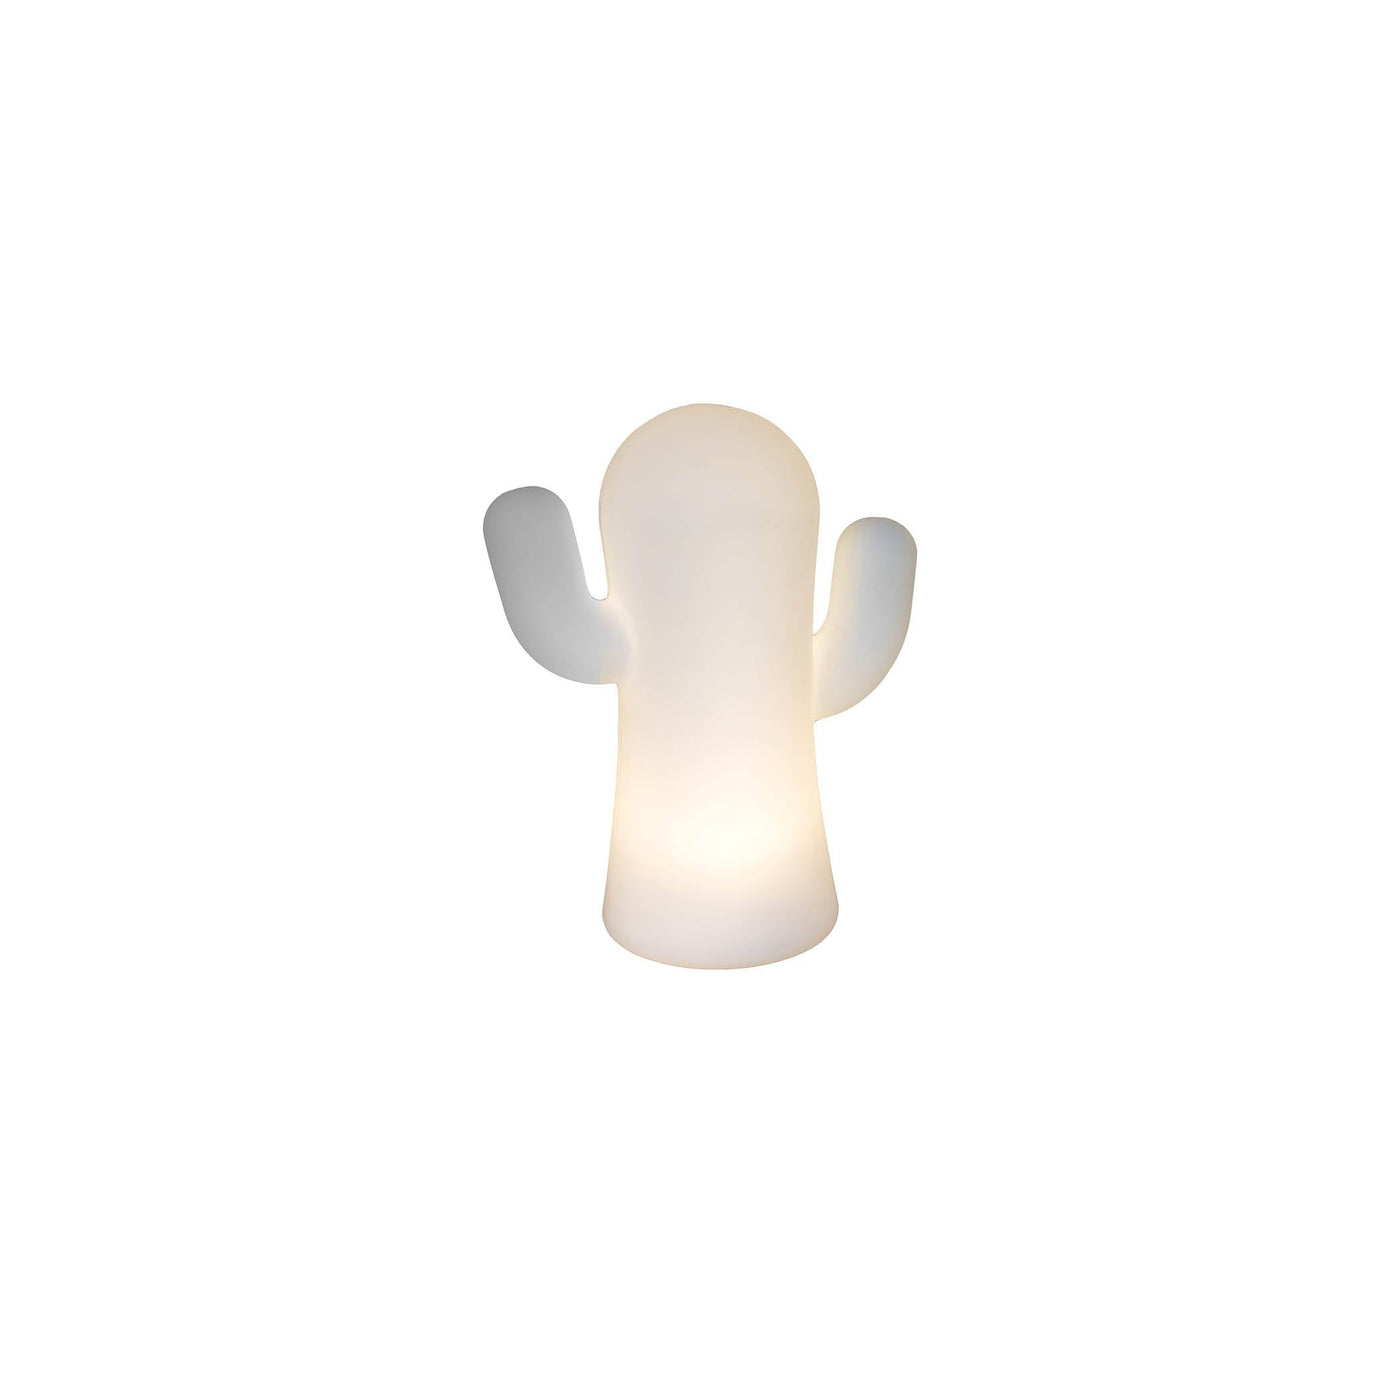 Panchito de Newgarden : lampe de table unique, inspirée du cactus mexicain. Choix de couleurs : vert lime ou blanc. Blanc.